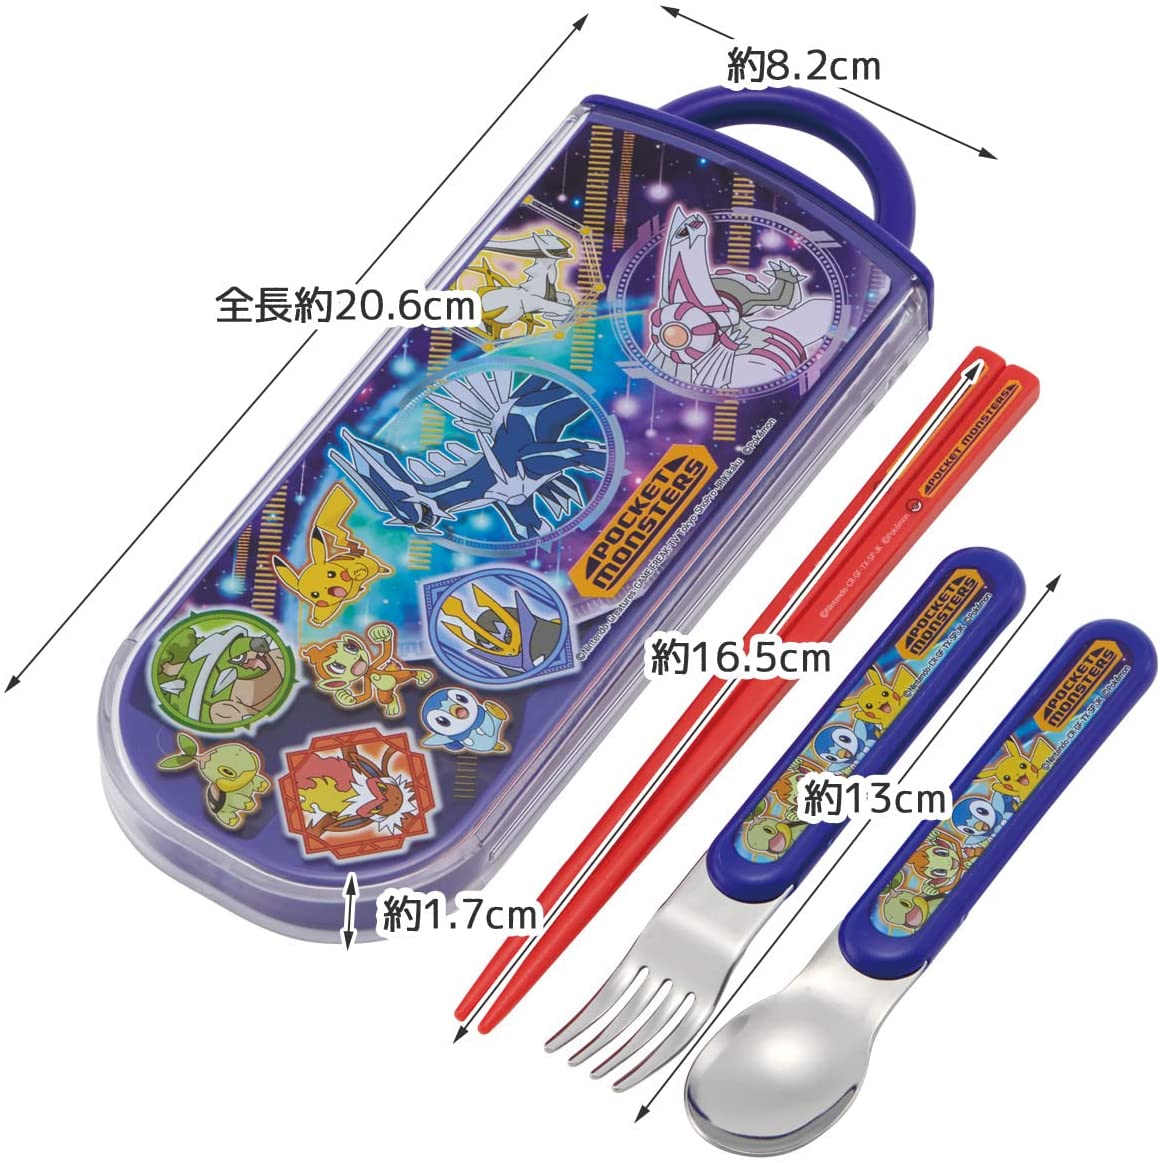 Pokemon Spoon, Fork, Chopsticks Utensil Set with Case for Kids